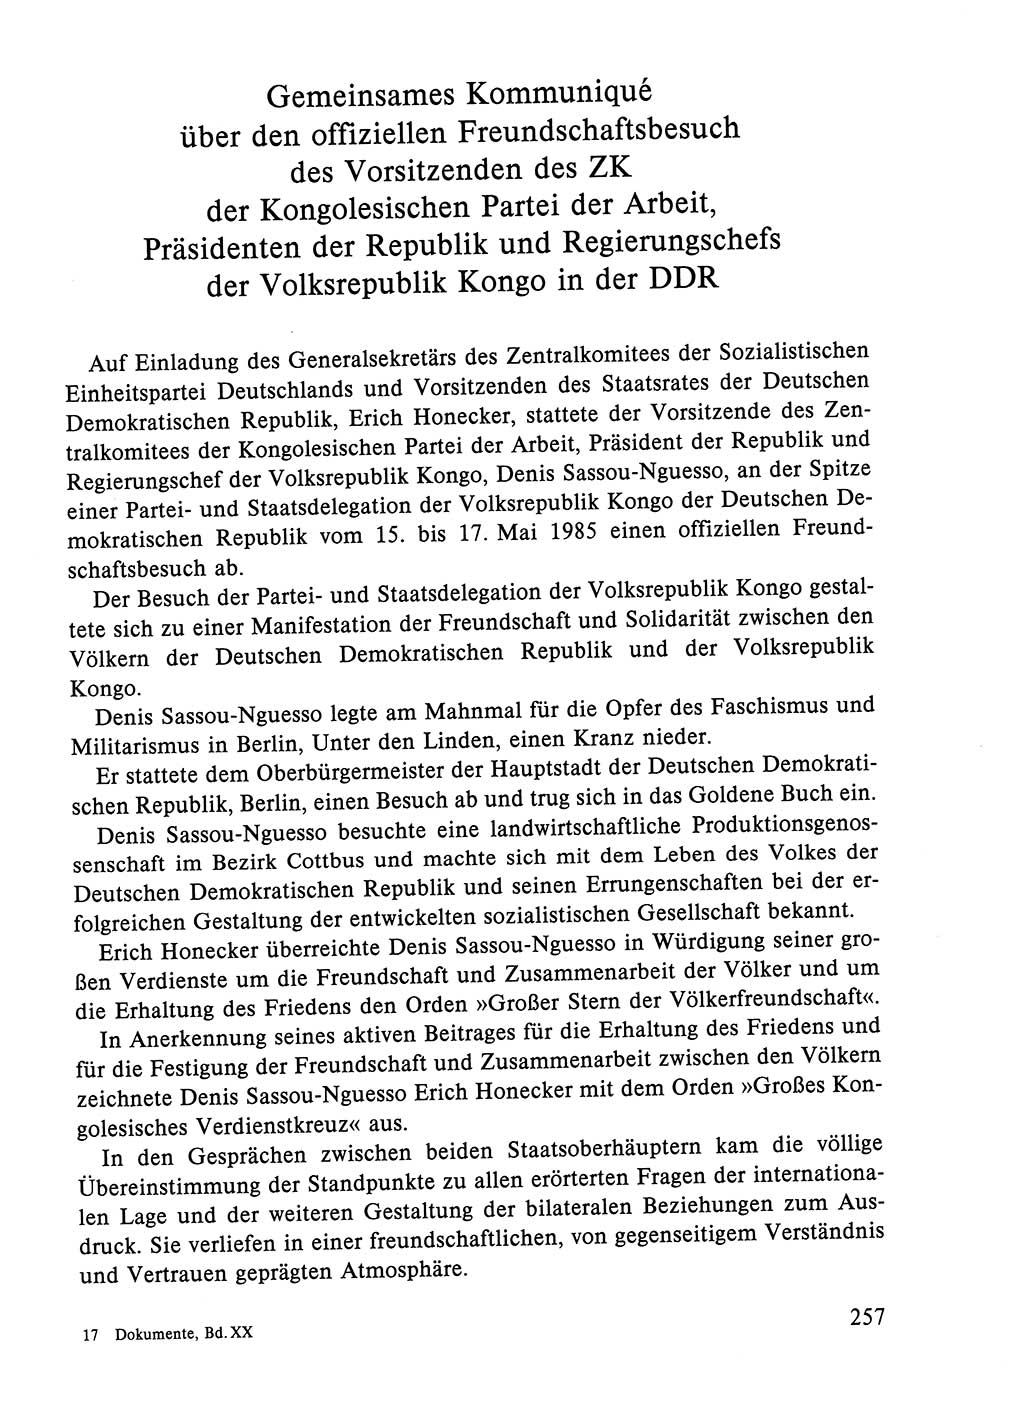 Dokumente der Sozialistischen Einheitspartei Deutschlands (SED) [Deutsche Demokratische Republik (DDR)] 1984-1985, Seite 170 (Dok. SED DDR 1984-1985, S. 170)